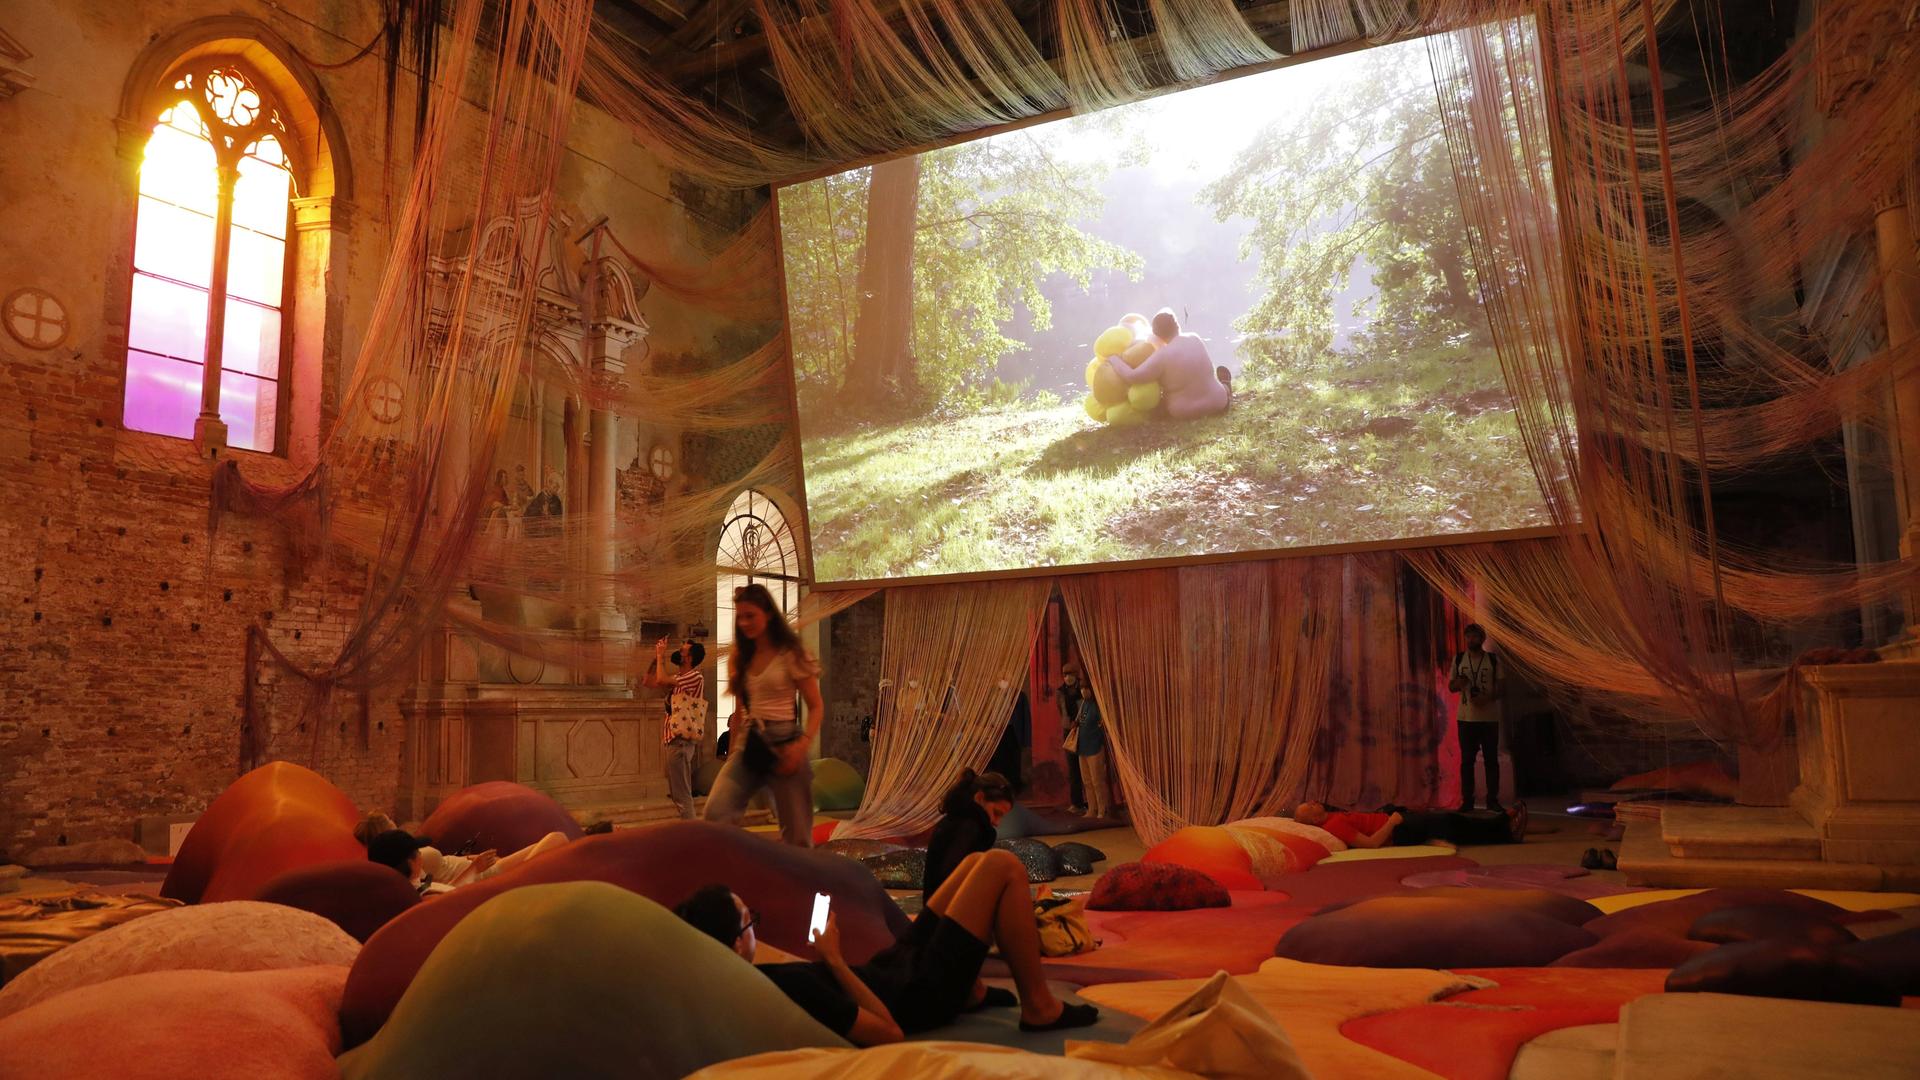 Ein mit farbigen Kissen ausgelegter Raum mit hohen Decken, von denen Schnüre hängen. Außerdem: Ein großer Bildschirm, auf dem eine Person in einer Waldlandschaft zu sehen ist.